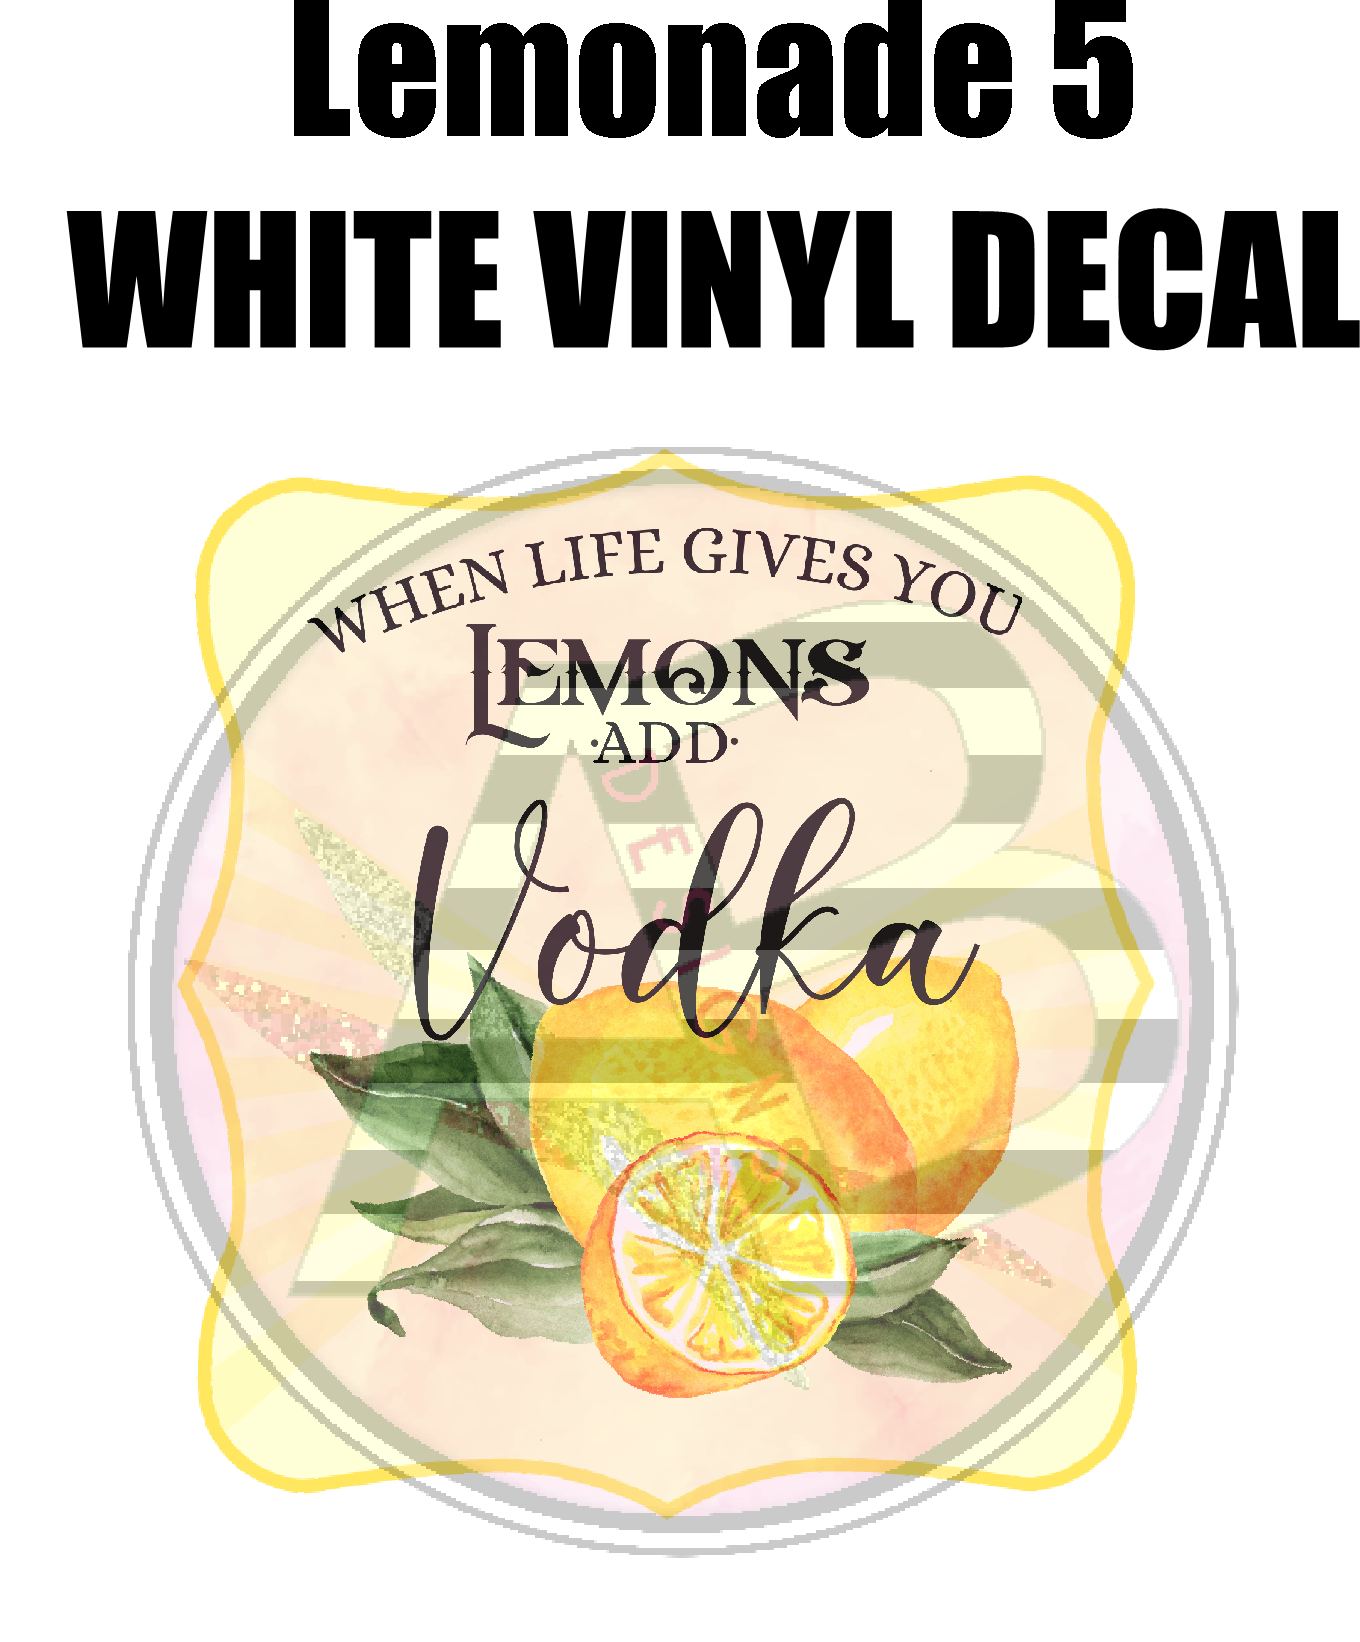 Lemonade 5 - White Vinyl Decal